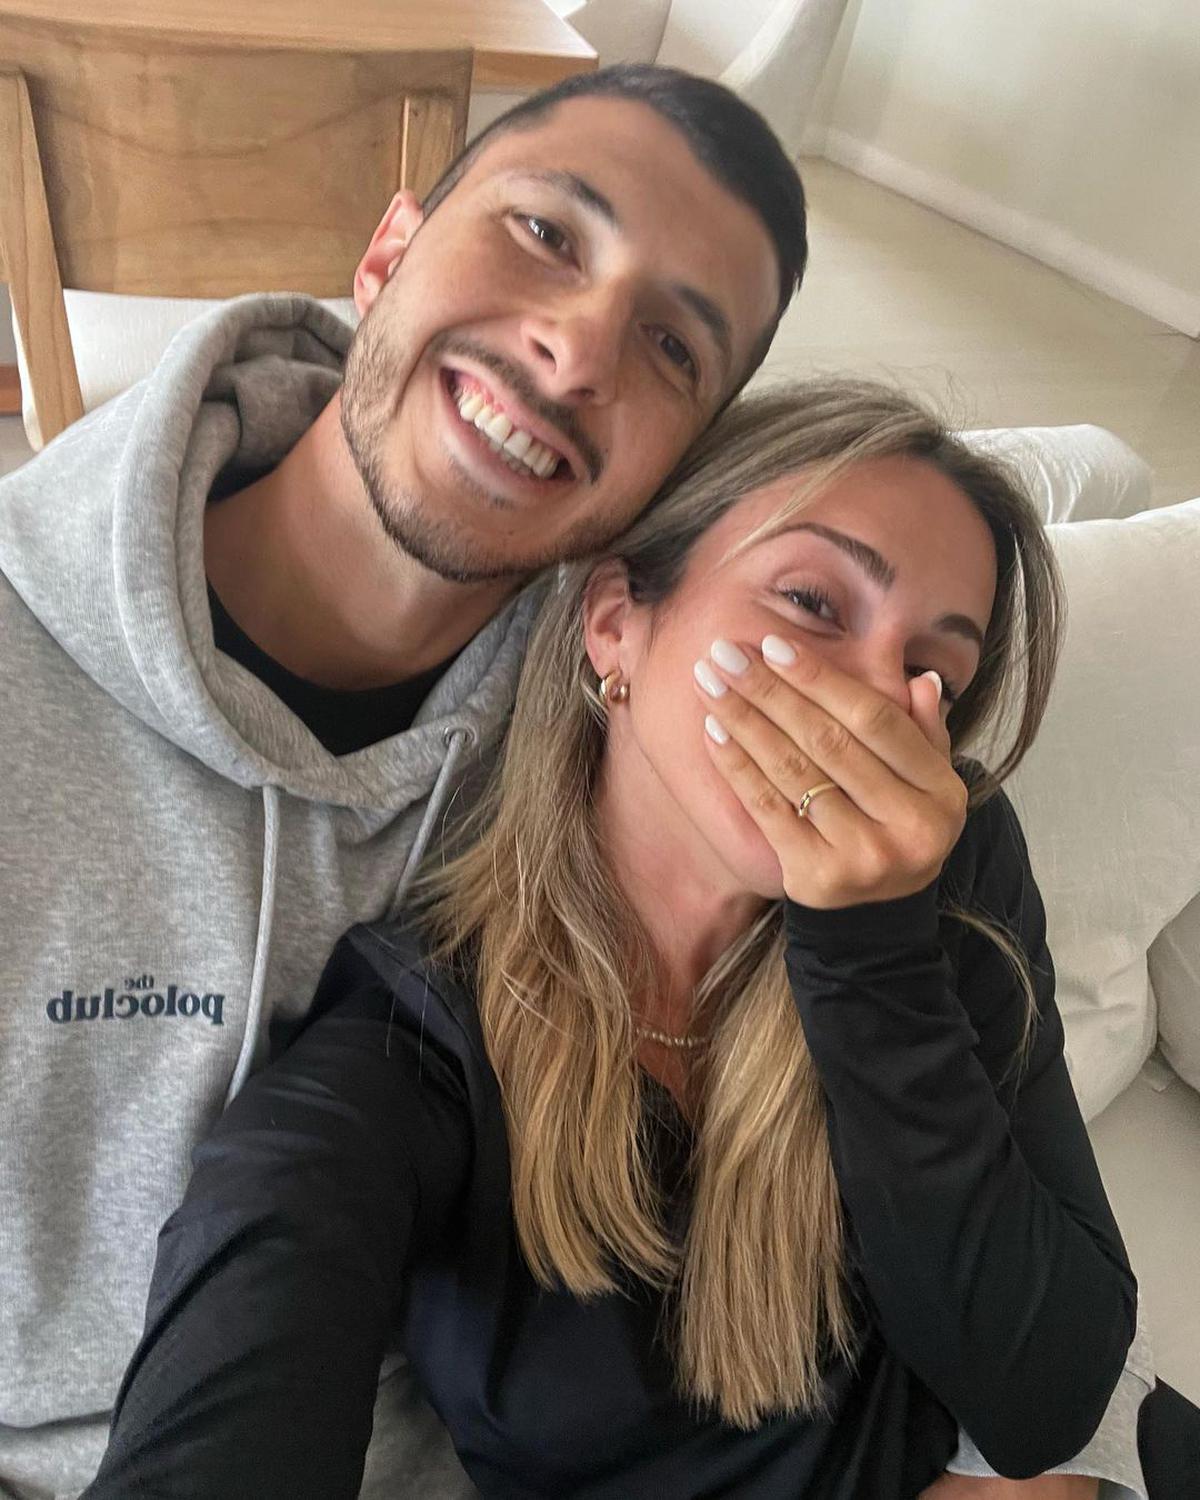 Guido Rodríguez | El ex América junto a su pareja Guadalupe Ramón anuncieron la feliz noticia. Crédito: Instagram @guiido_rodriguez.